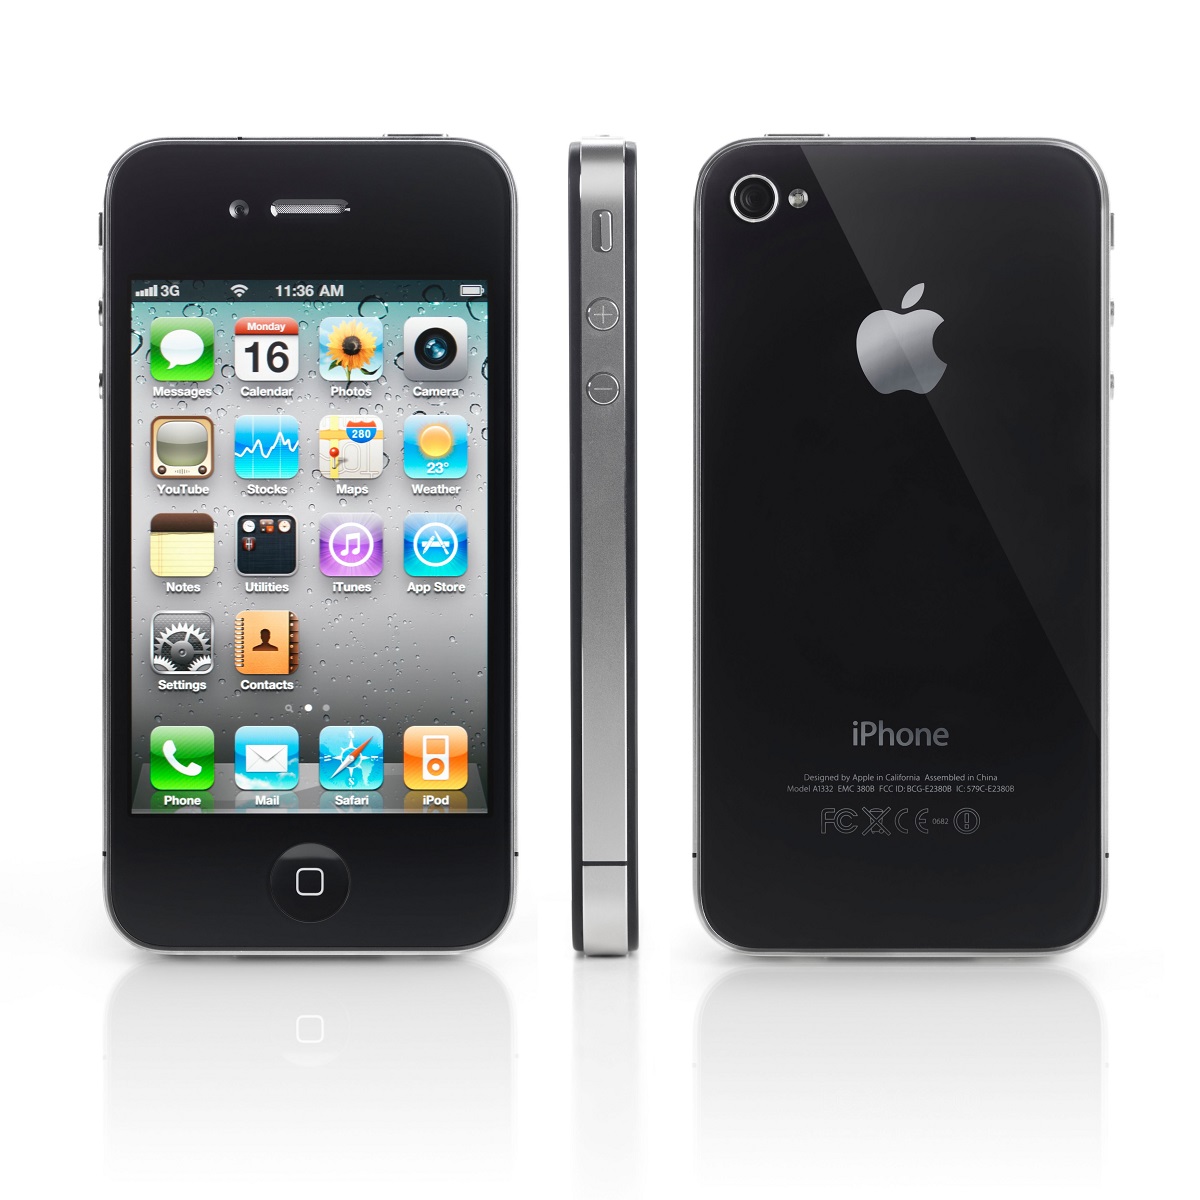 iPhone 4, pe fundal alb, față, spate și lateral